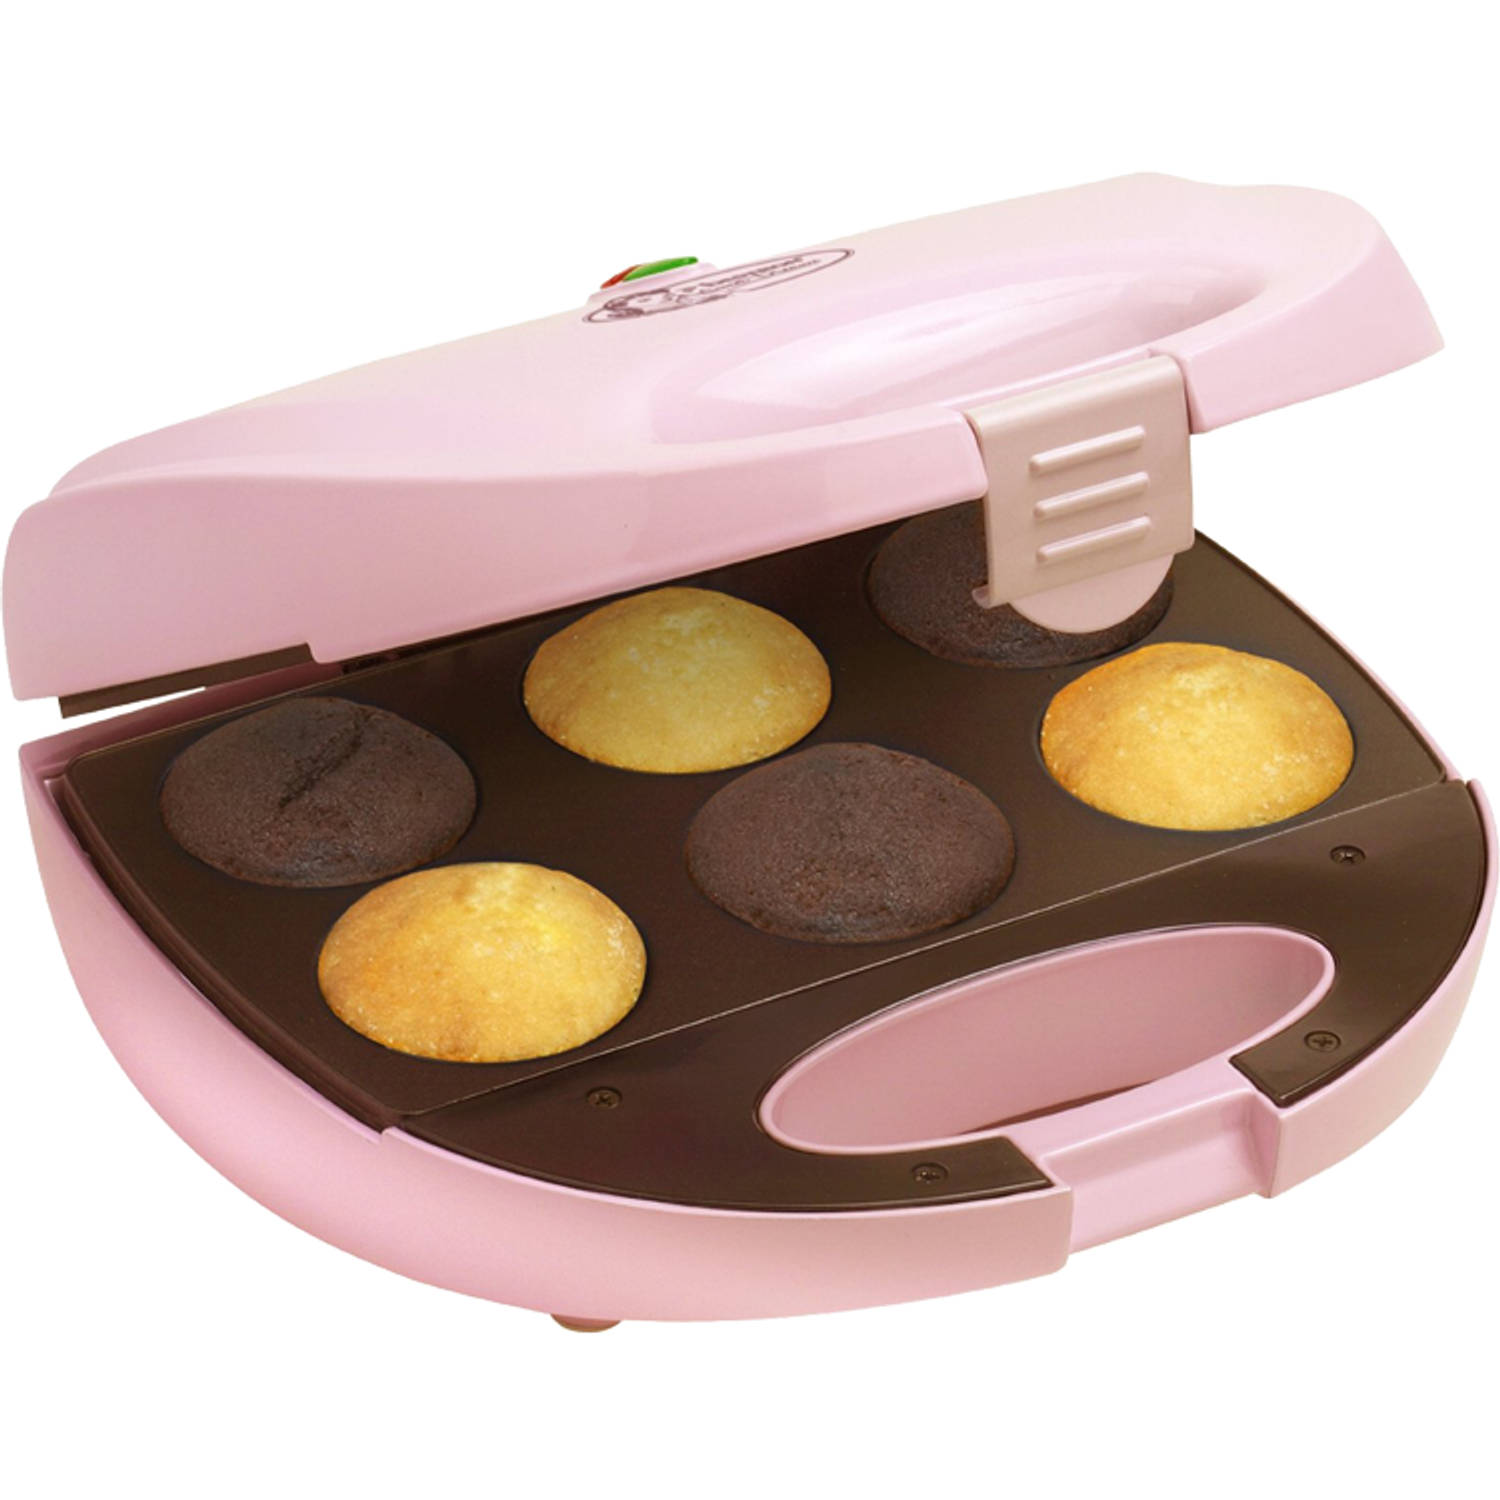 Bestron DCM8162 cupcake maker -